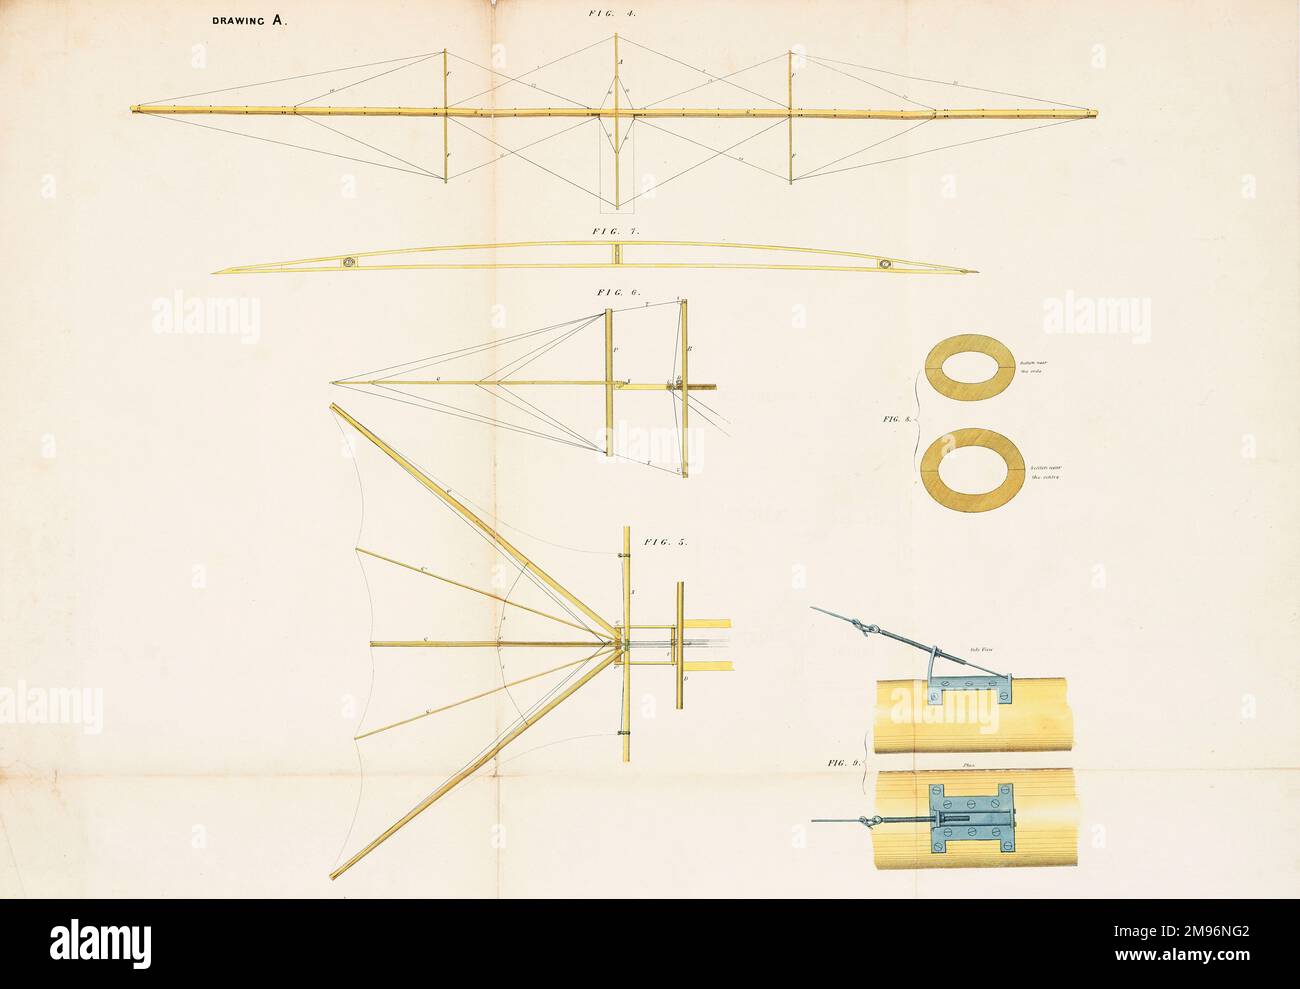 Il carrello a vapore aereo -- vista laterale del telaio principale, e pianta della coda di controllo. Questa macchina volante fu brevettata da William Samuel Henson (1812-1888) e John Stringfellow (1799-1883) nel 1842. Foto Stock